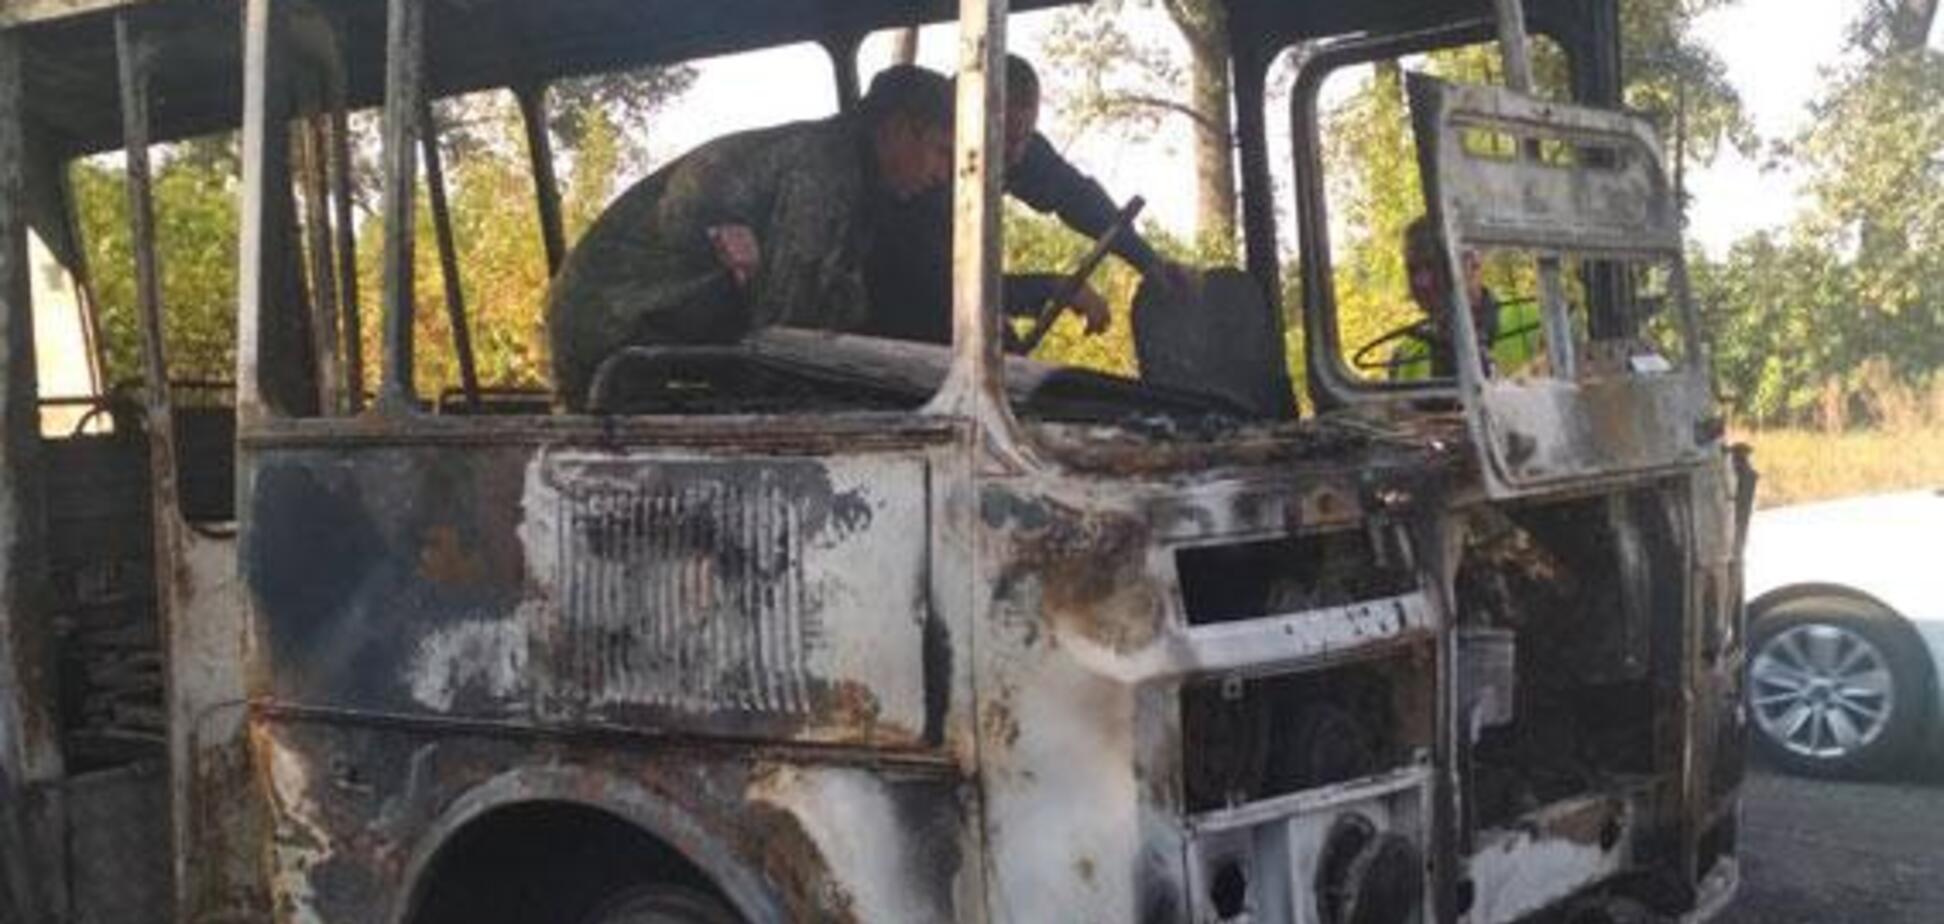 Вез 20 детей: на Сумщине полностью сгорел пассажирский автобус. Фото ЧП